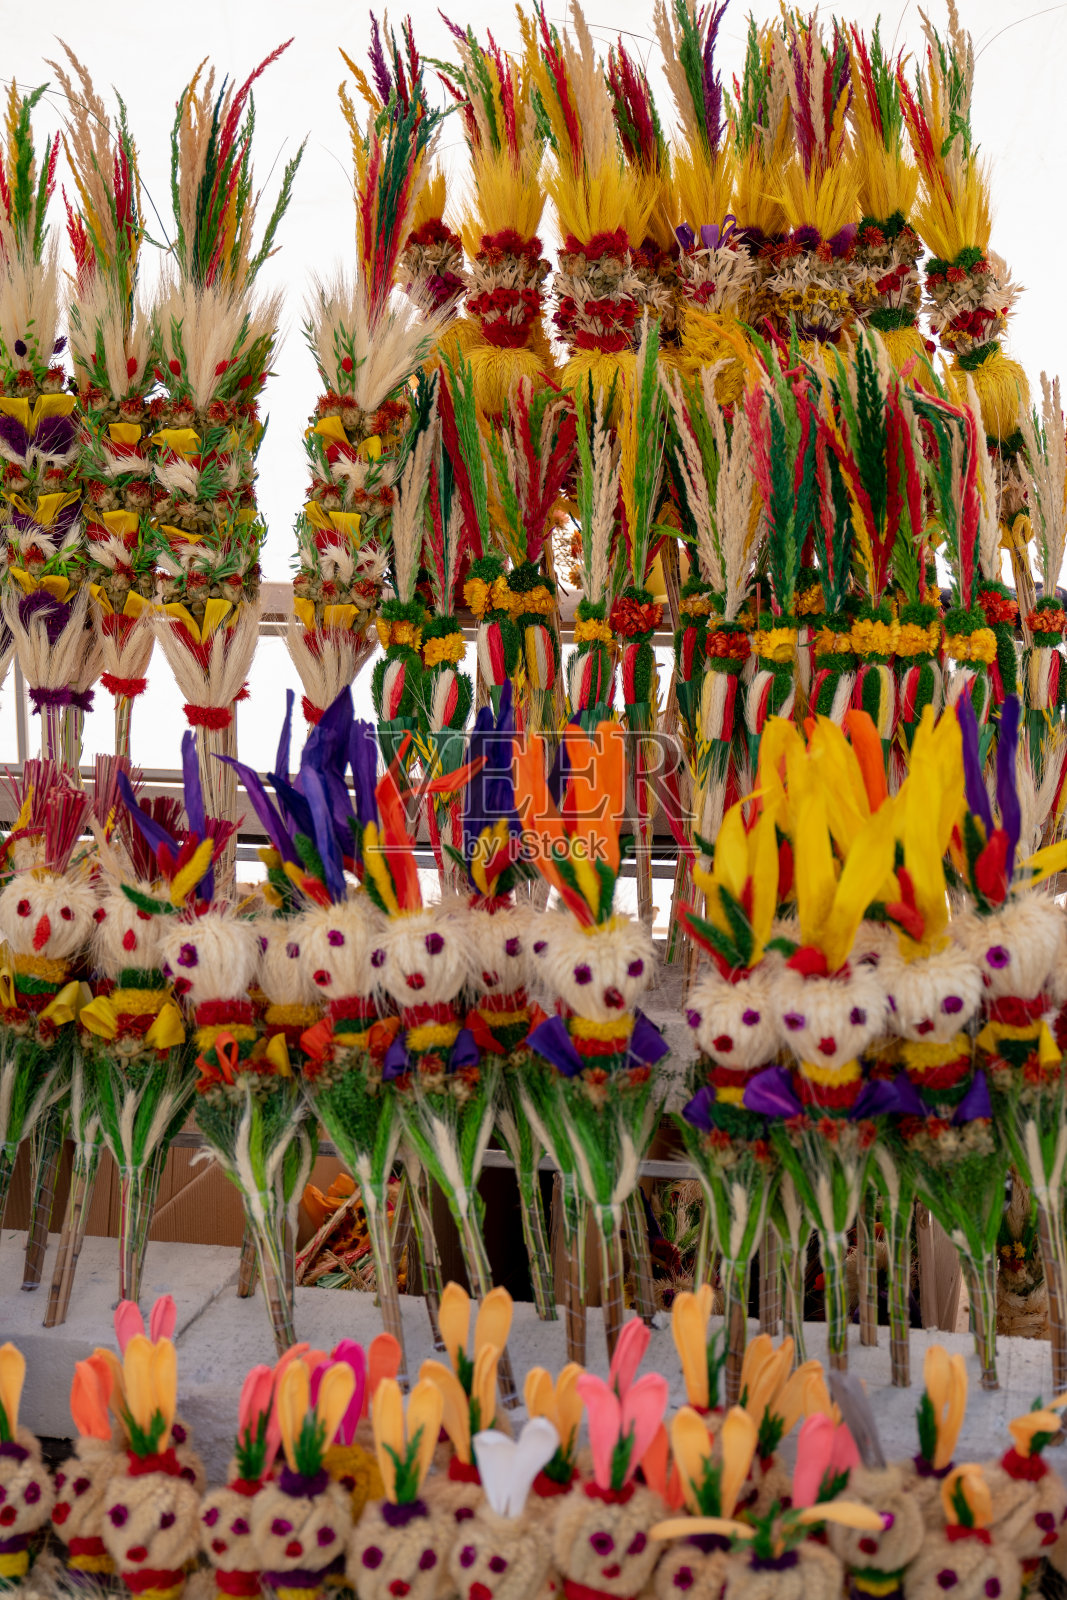 传统复活节装饰棕榈花束照片摄影图片